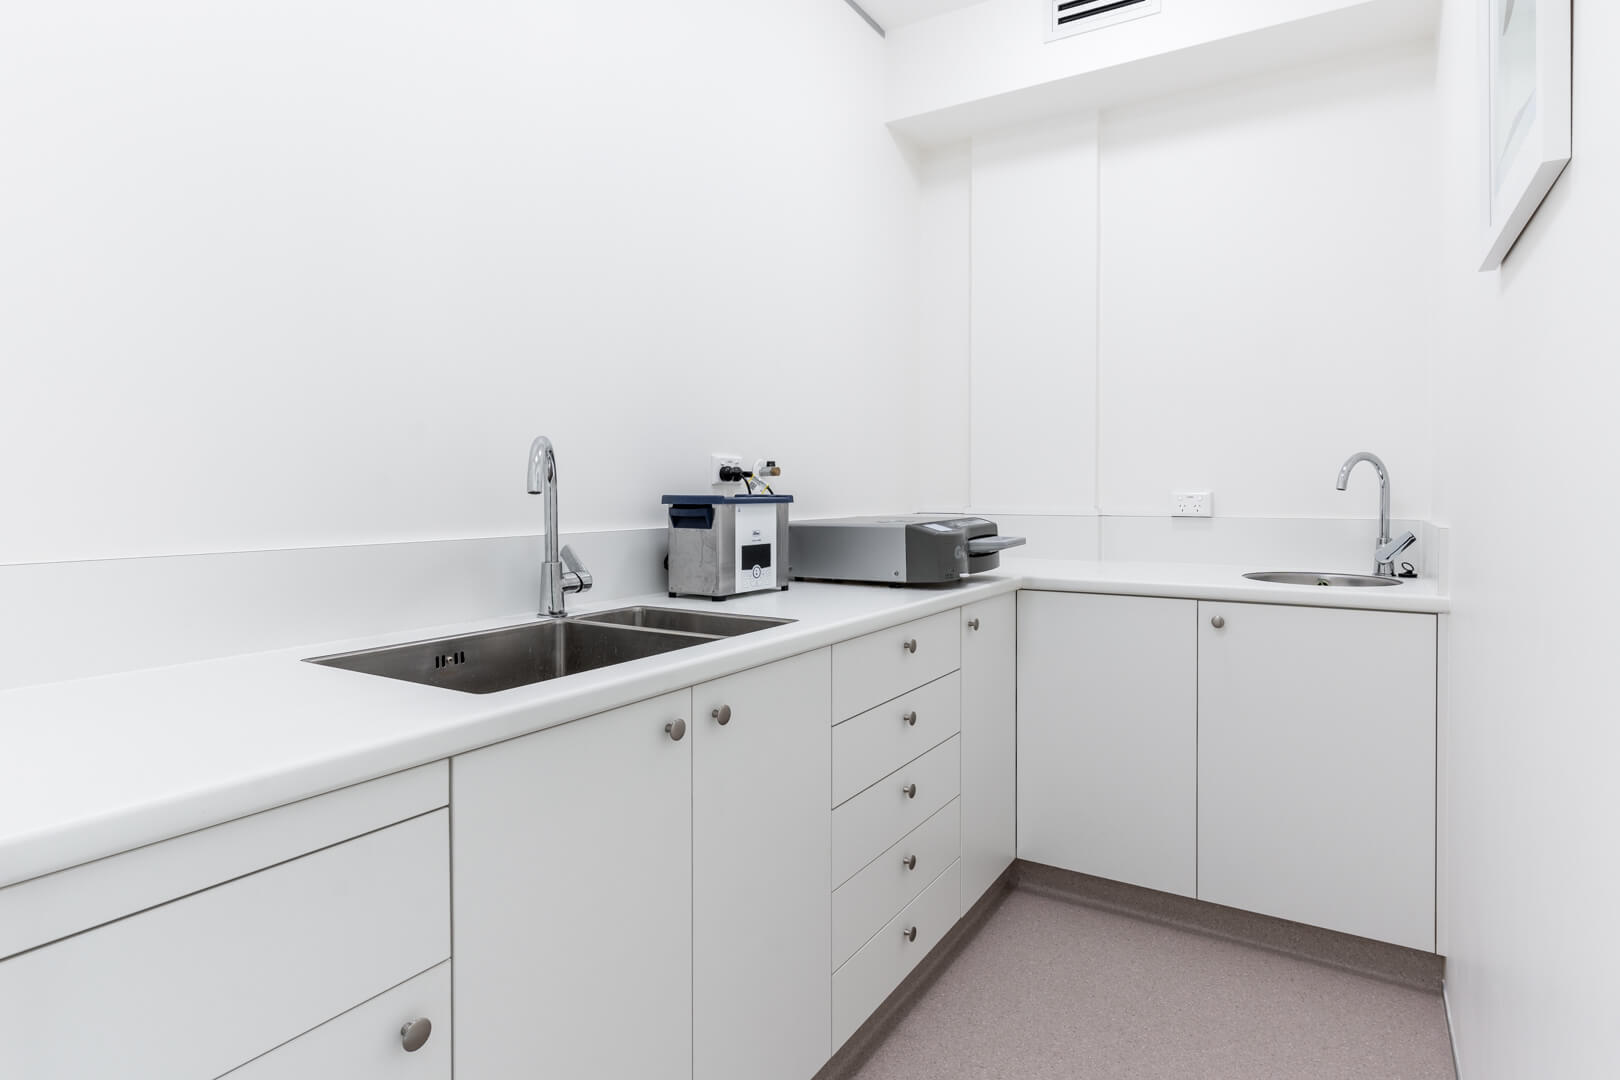 Sterilisation room NZ